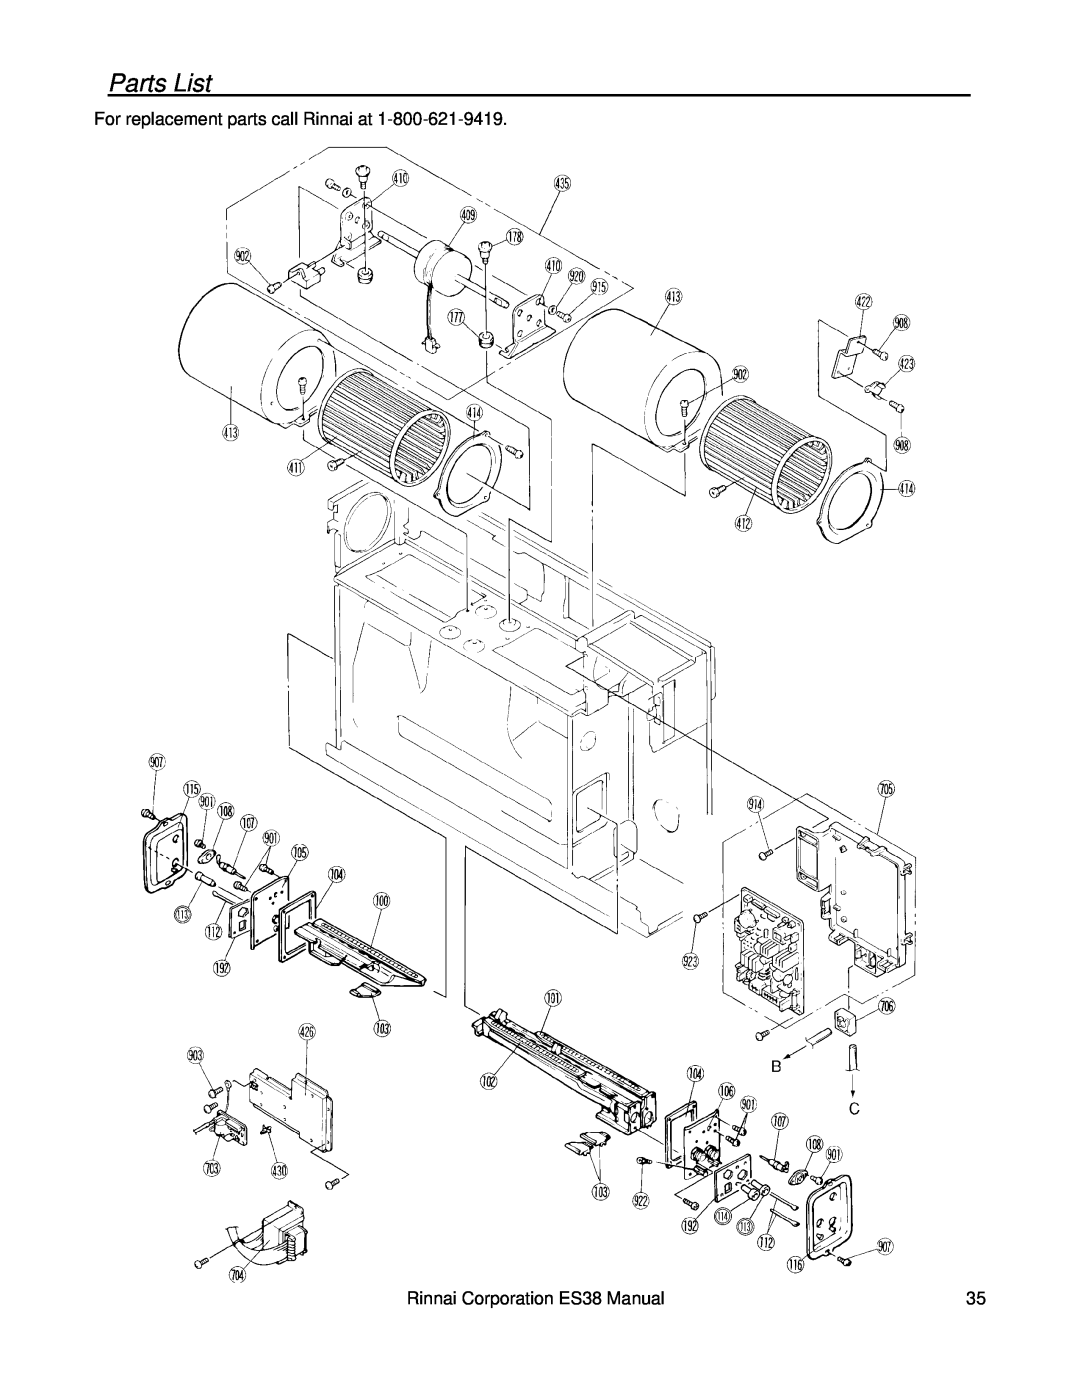 Rinnai installation manual Parts List, For replacement parts call Rinnai at, Rinnai Corporation ES38 Manual 